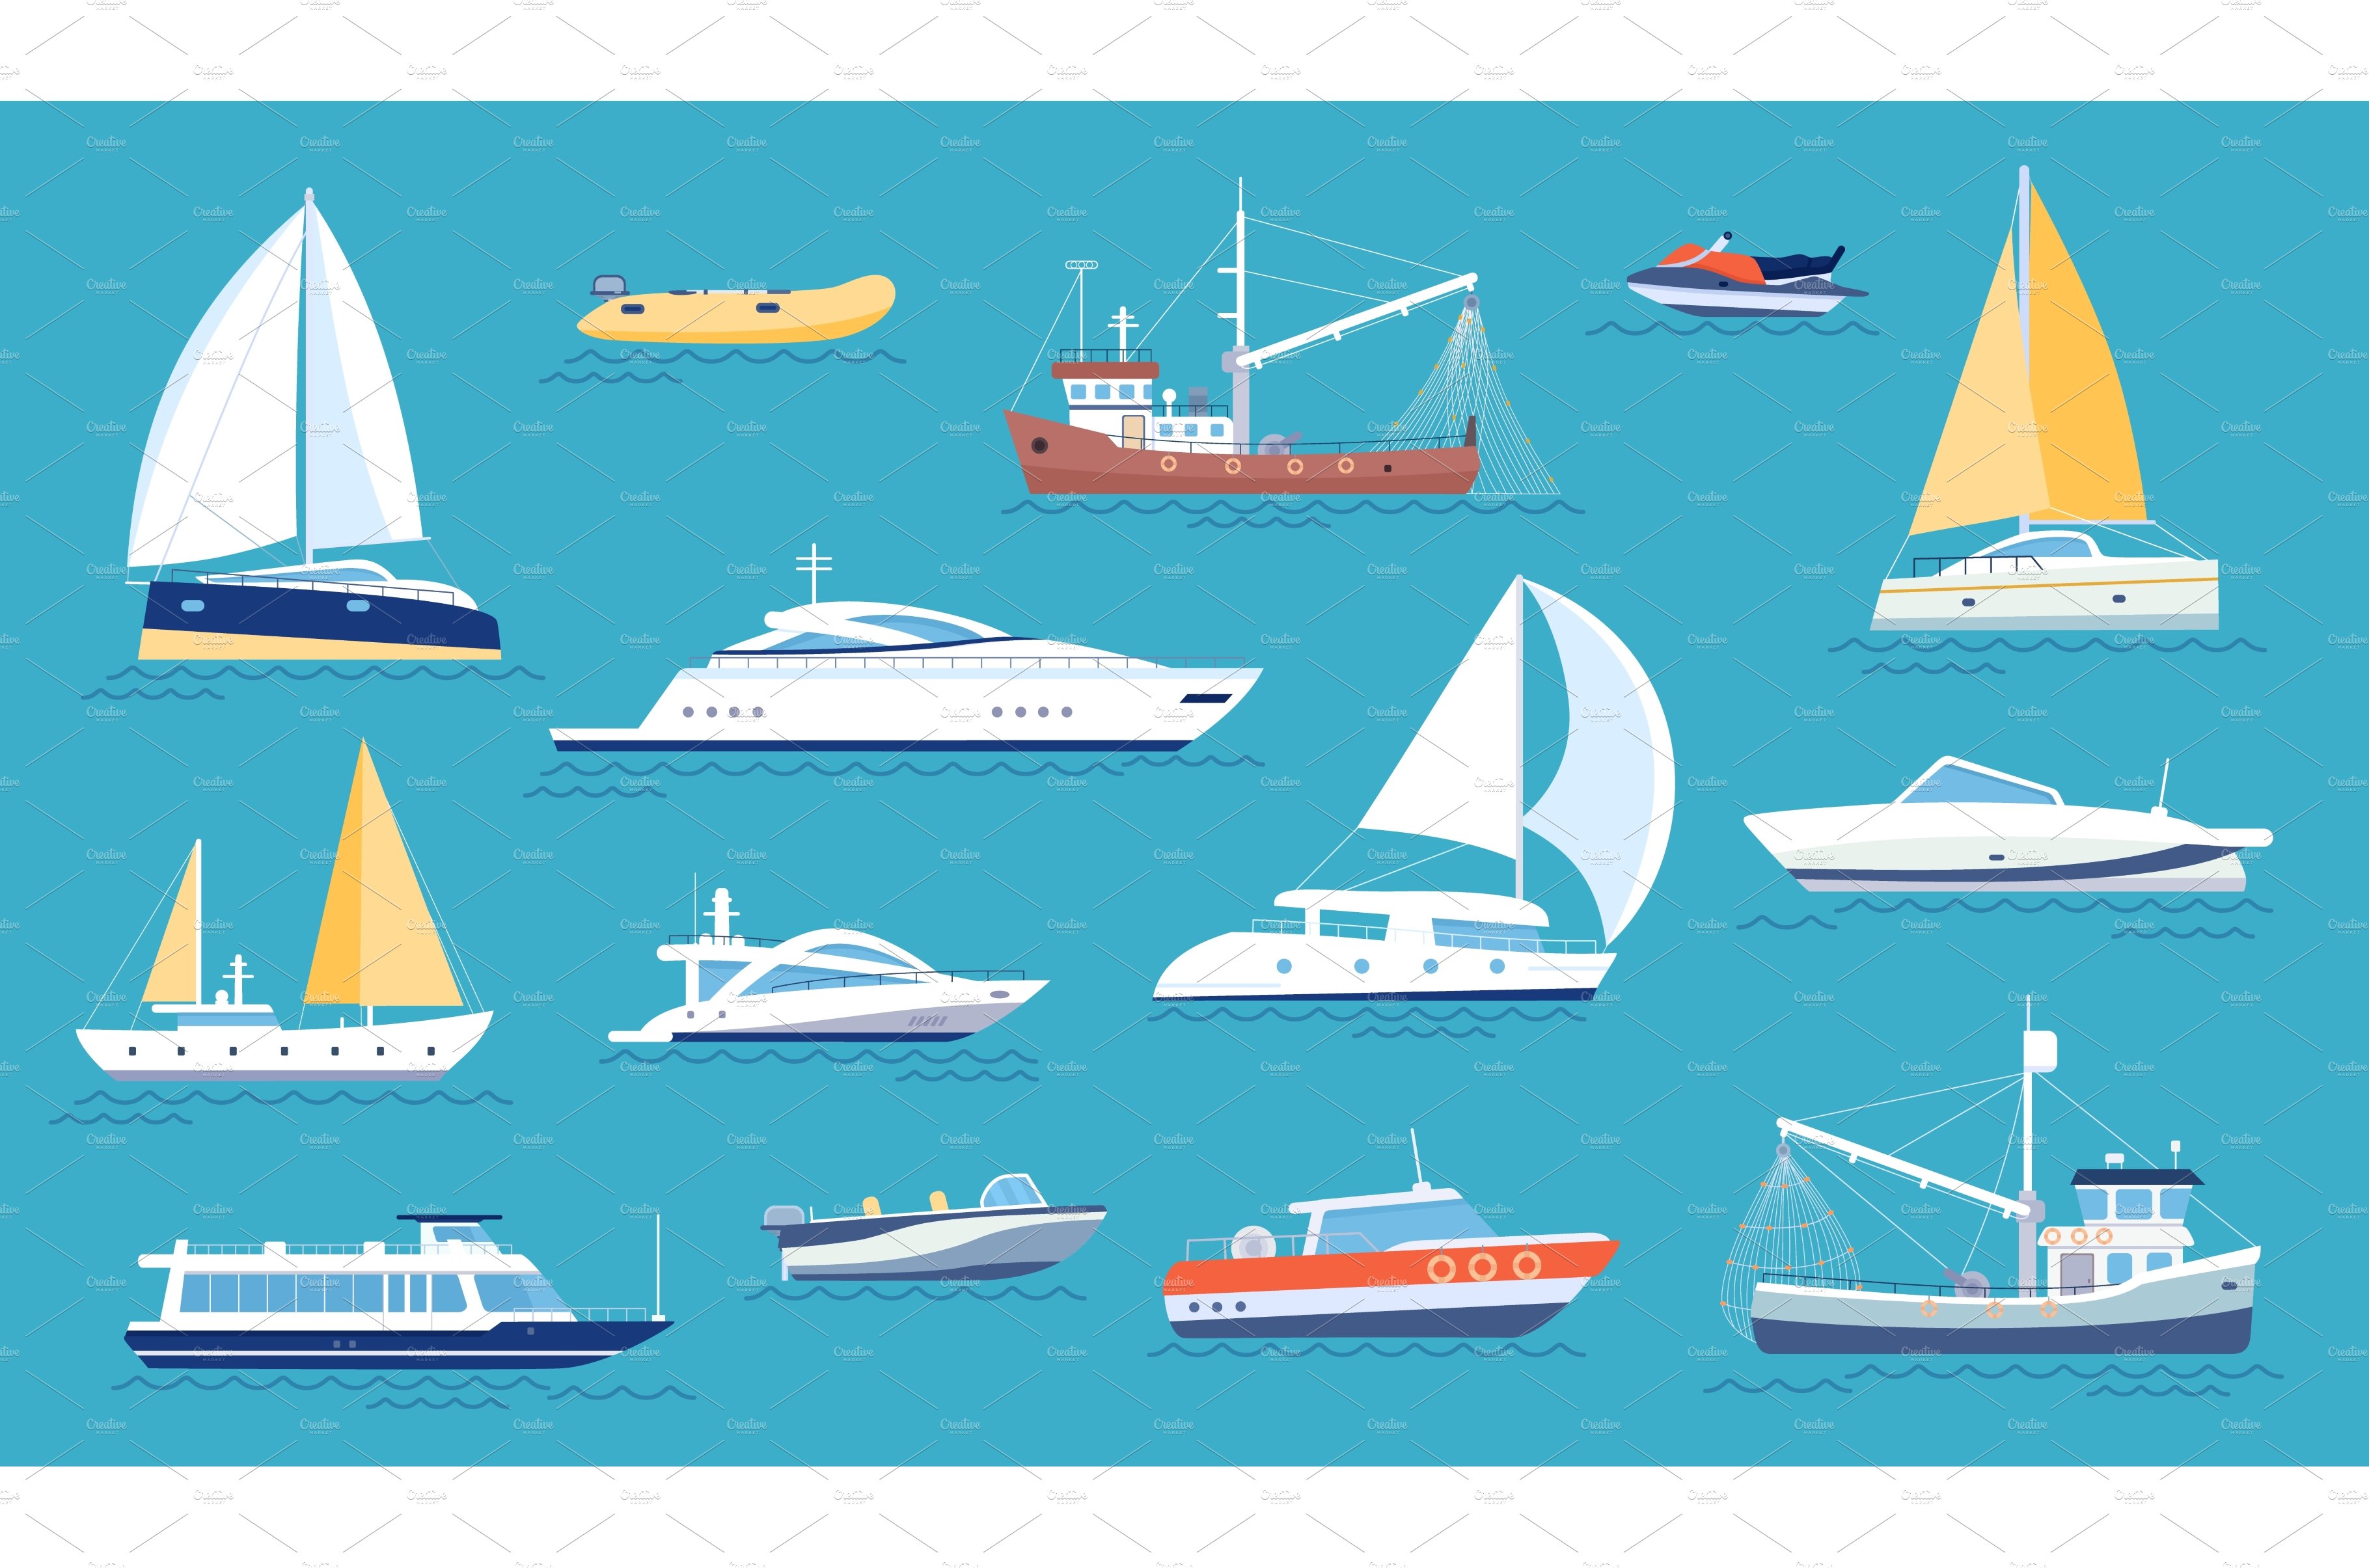 Yachts and sailboats. Small sea cover image.